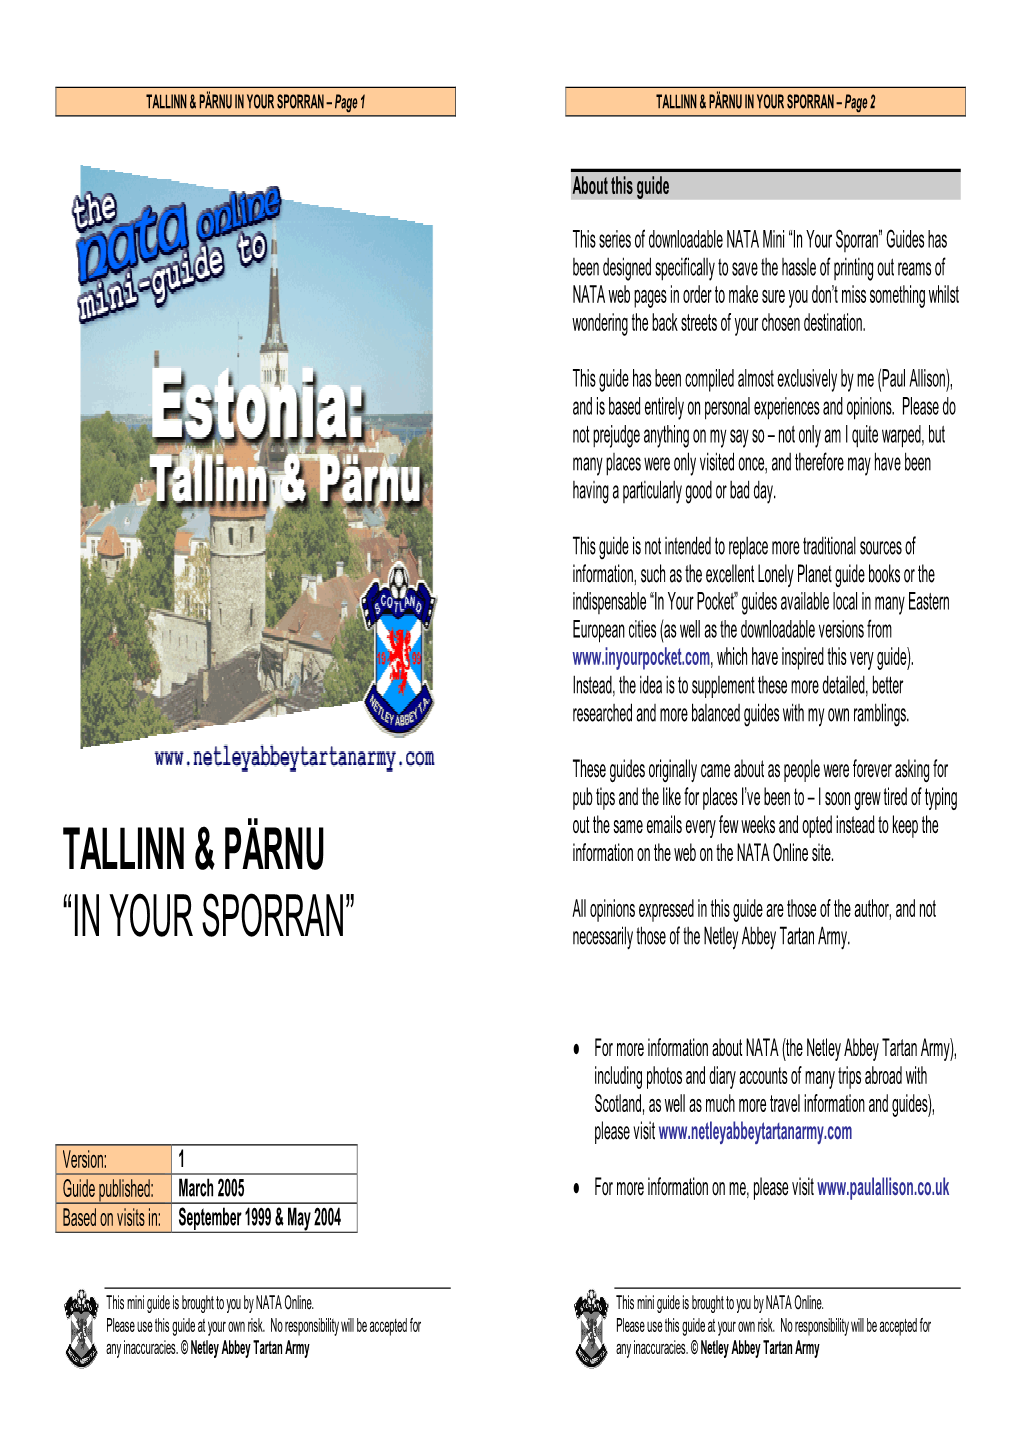 Estonia in Your Sporran